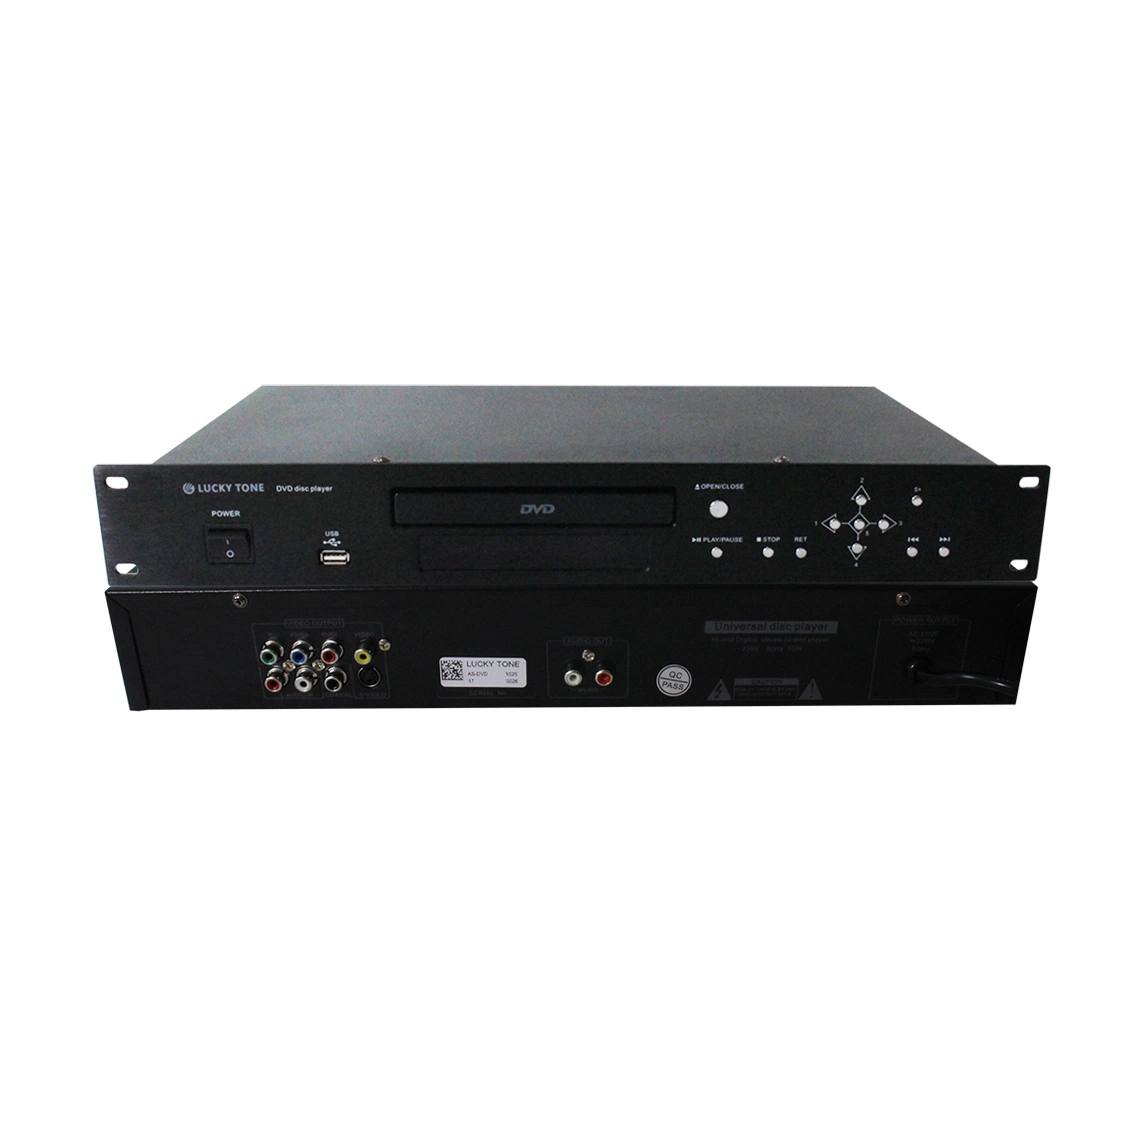 1,5 U Rack 19 pouces 220-240 V AC 10-15W MP3 Lecteur de DVD avec USB et télécommande IR sans fil